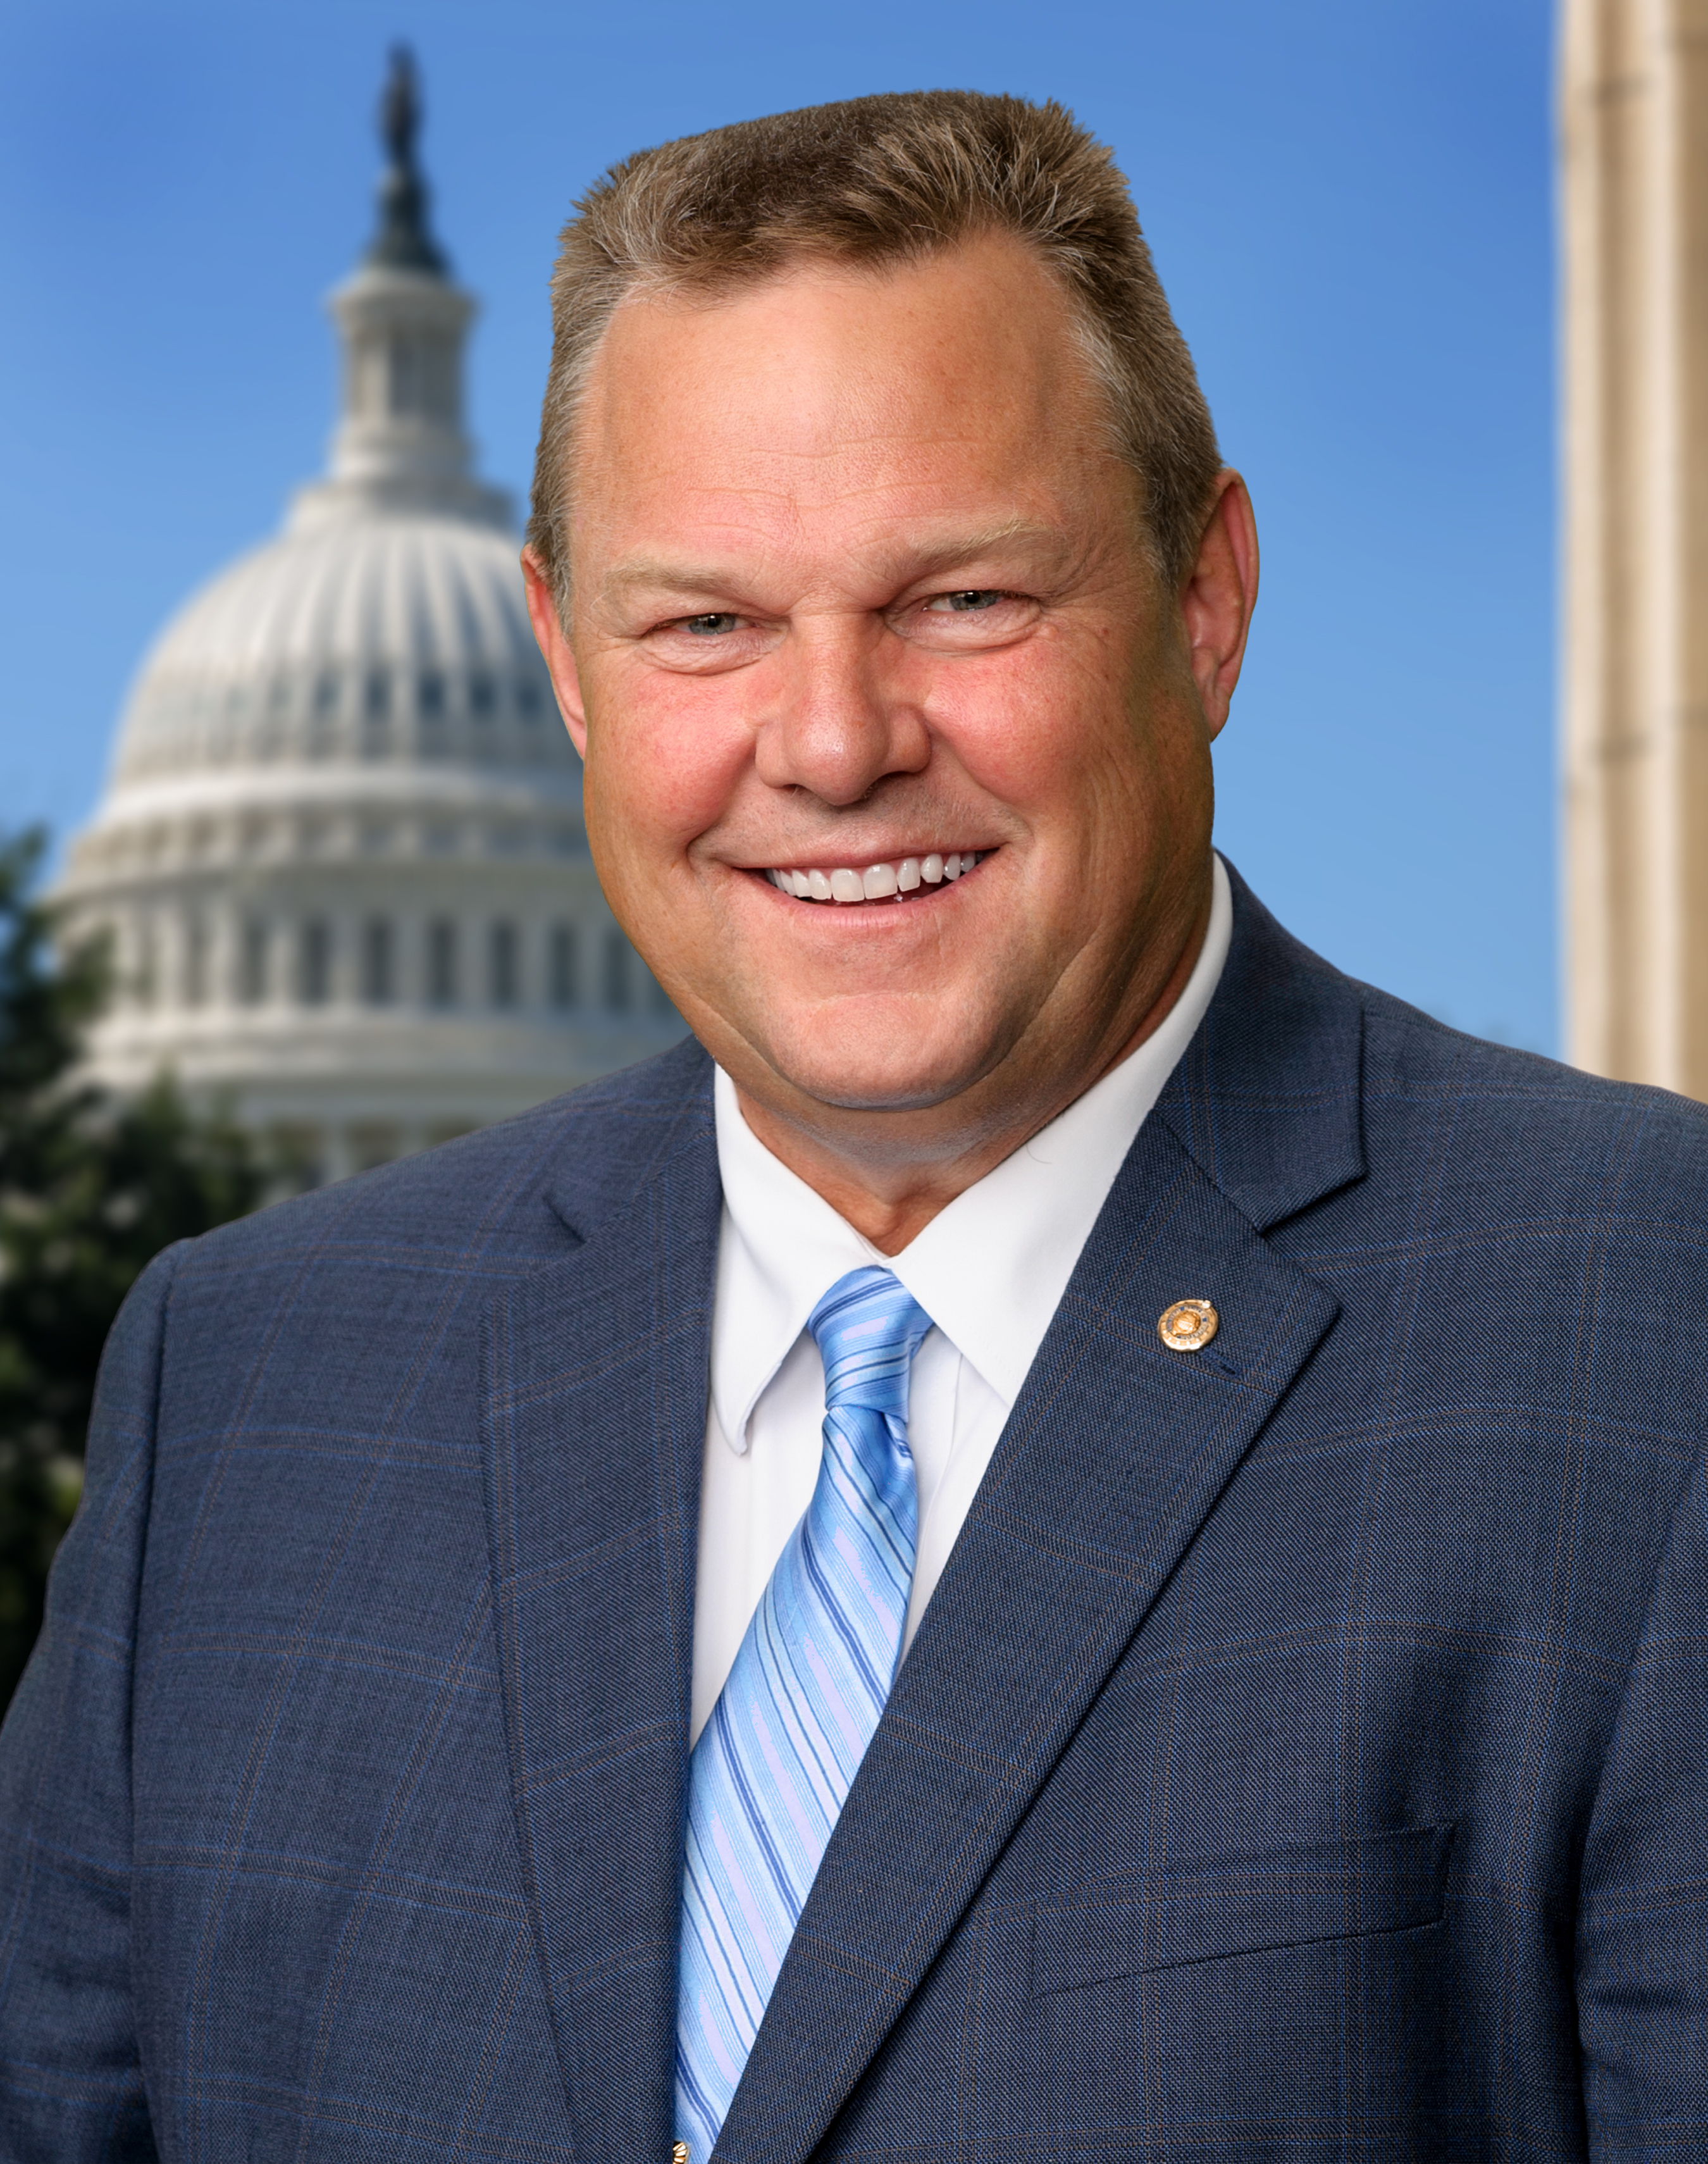 Senator Tester's Official Portrait